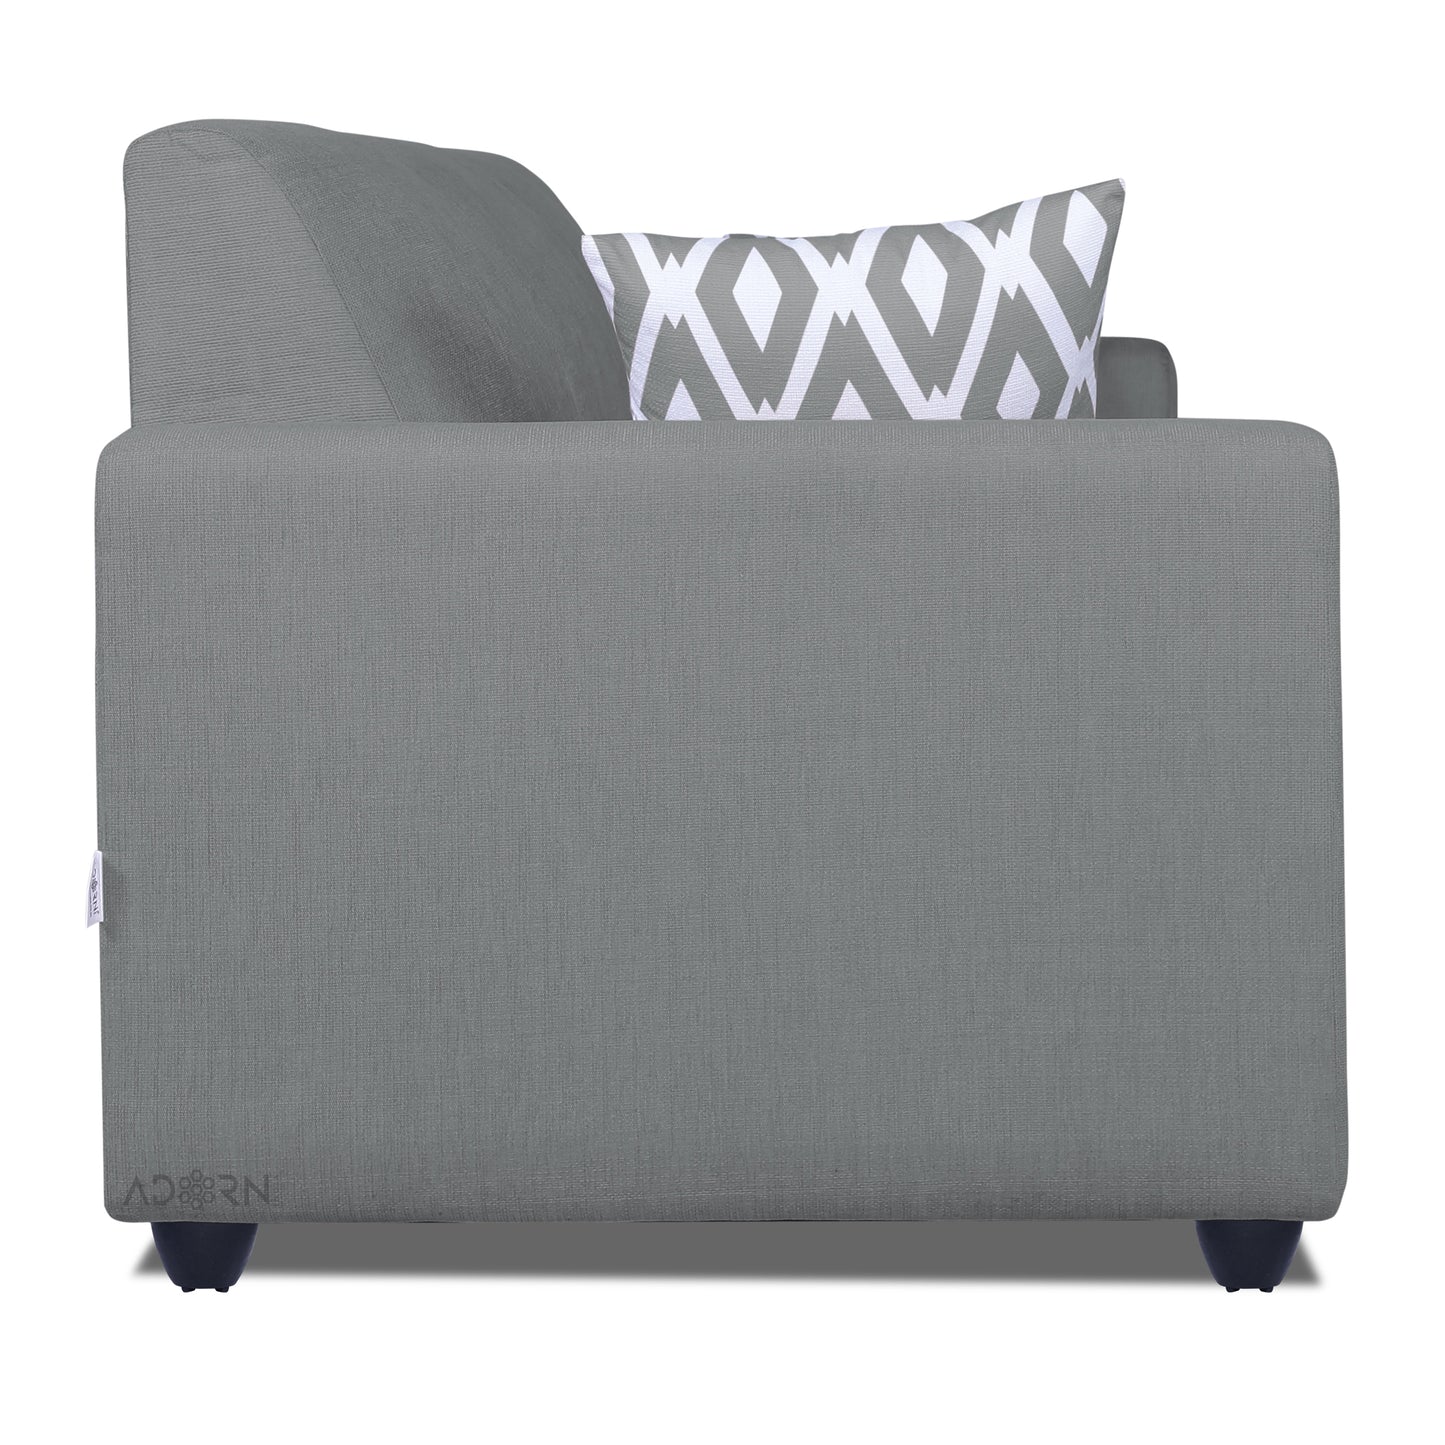 Adorn India Monteno 5 Seater 3-1-1 Sofa Set (Grey)